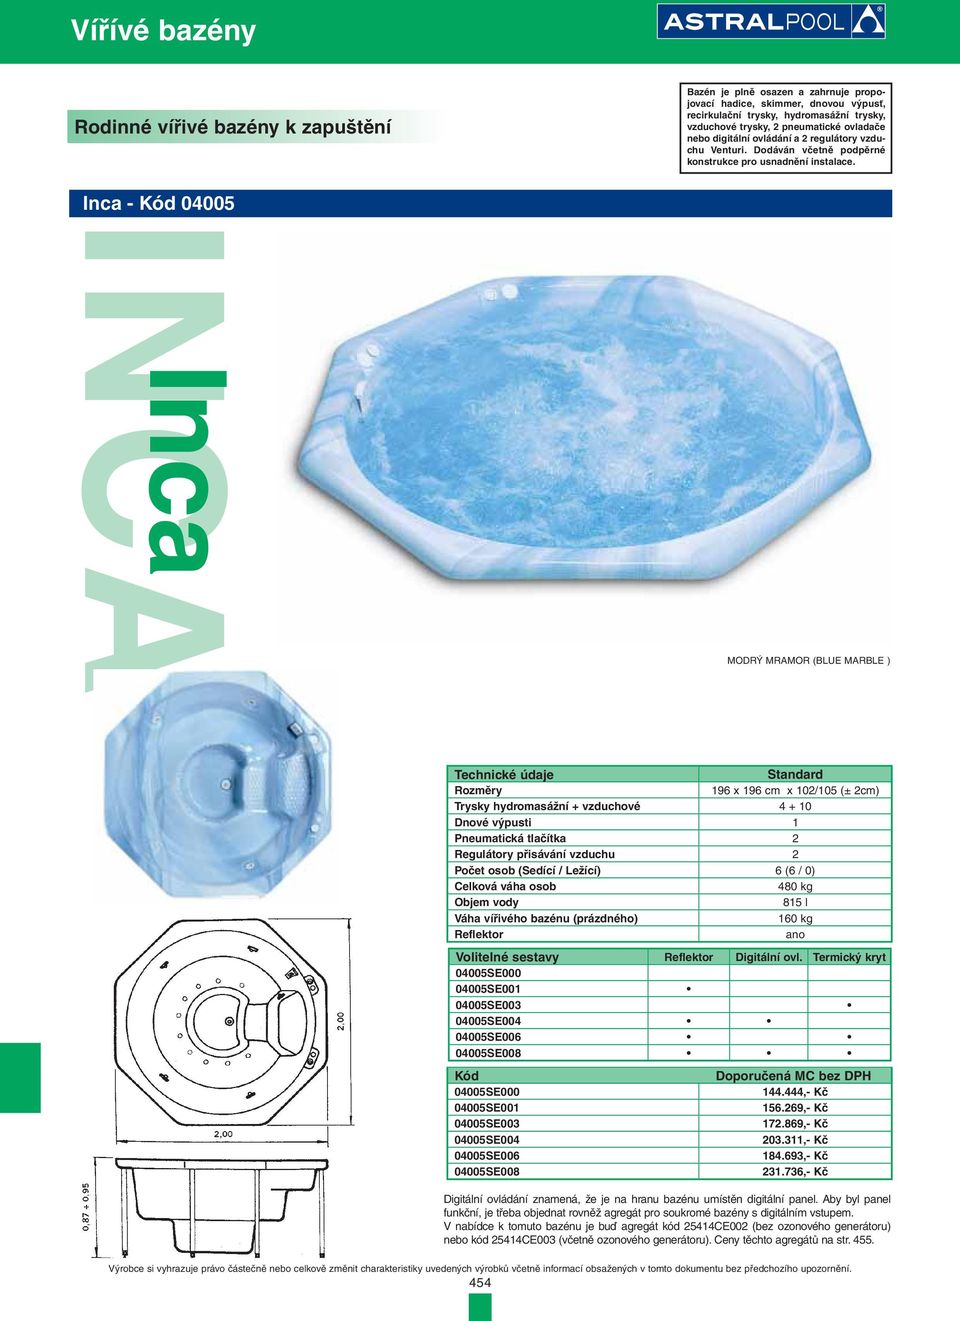 Inca - Kód 04005 INCA Inca MODRÝ MRAMOR (BLUE MARBLE ) Technické údaje Standard Rozměry 196 x 196 cm x 102/105 (± 2cm) Trysky hydromasážní + vzduchové 4 + 10 Dnové výpusti 1 Pneumatická tlačítka 2